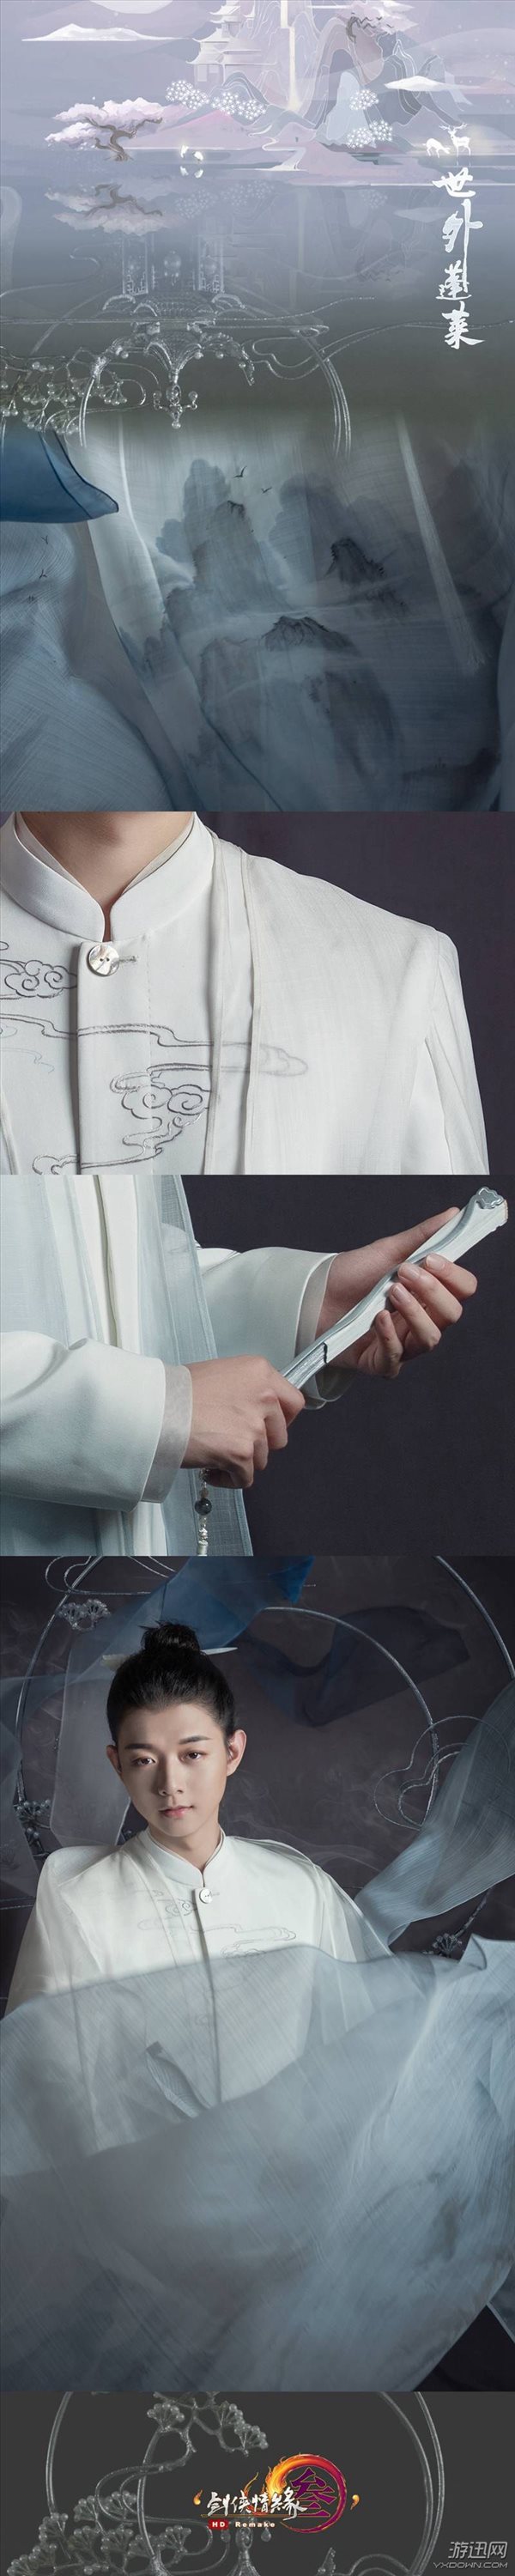 《剑网3》X盖娅传说携手打造 霍尊蓬莱定制礼服